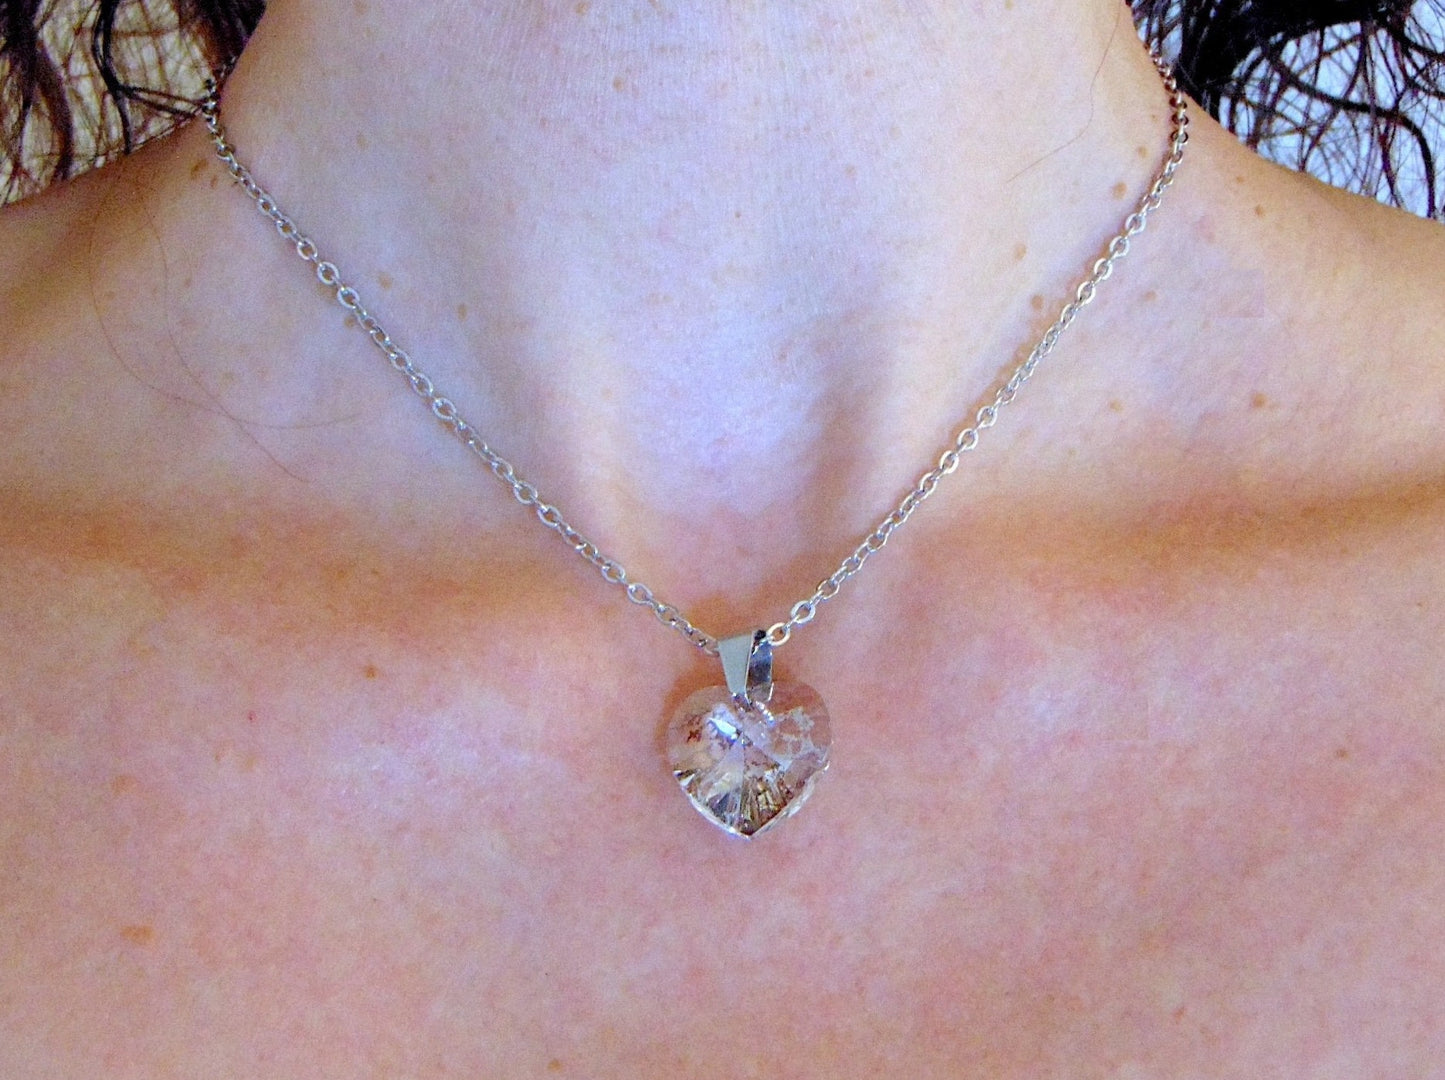 Collier 16 po à pendentif coeur de cristal Swarovski 15mm transparent à motif argenté (silver patina), chaîne acier inoxydable